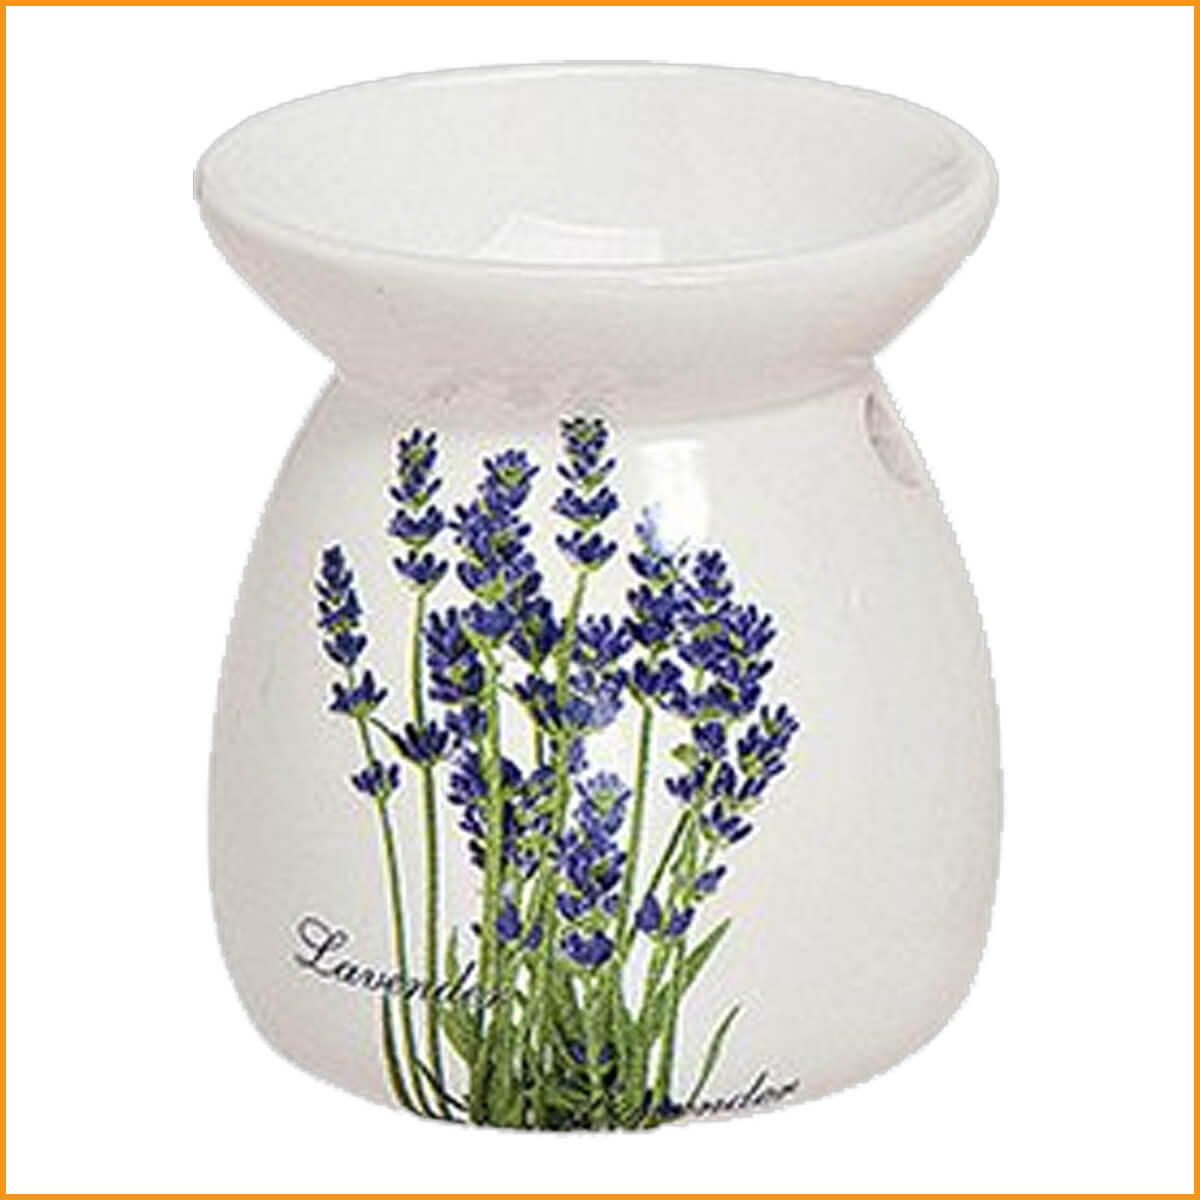 DUFTLAMPE Lavendel - Keramik - weiß - Stövchen - Aromalampe - Teelicht